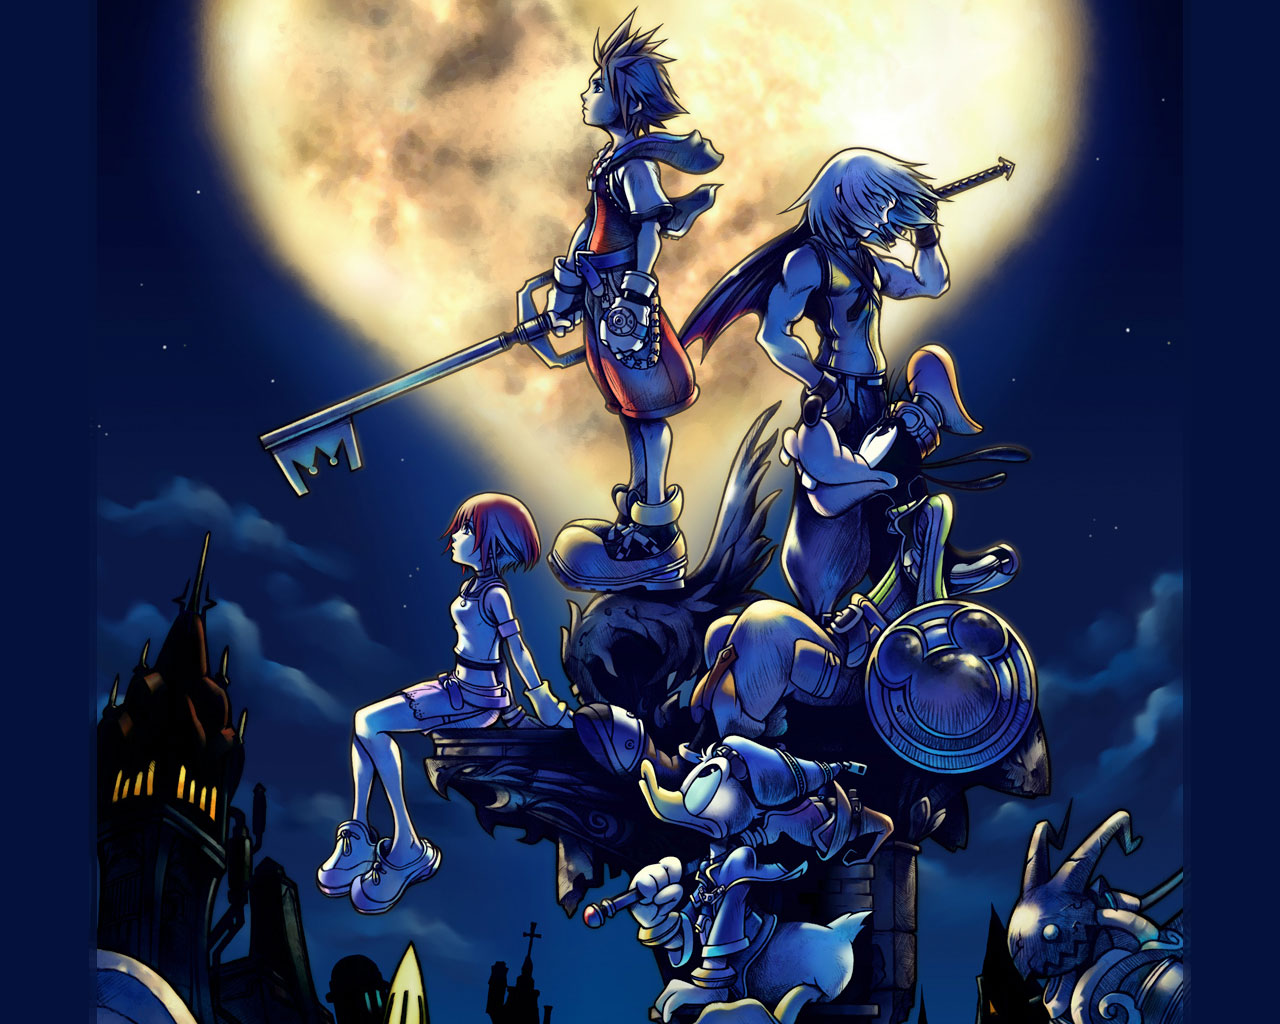 48 Kingdom Hearts Ipad Wallpaper On Wallpapersafari Images, Photos, Reviews